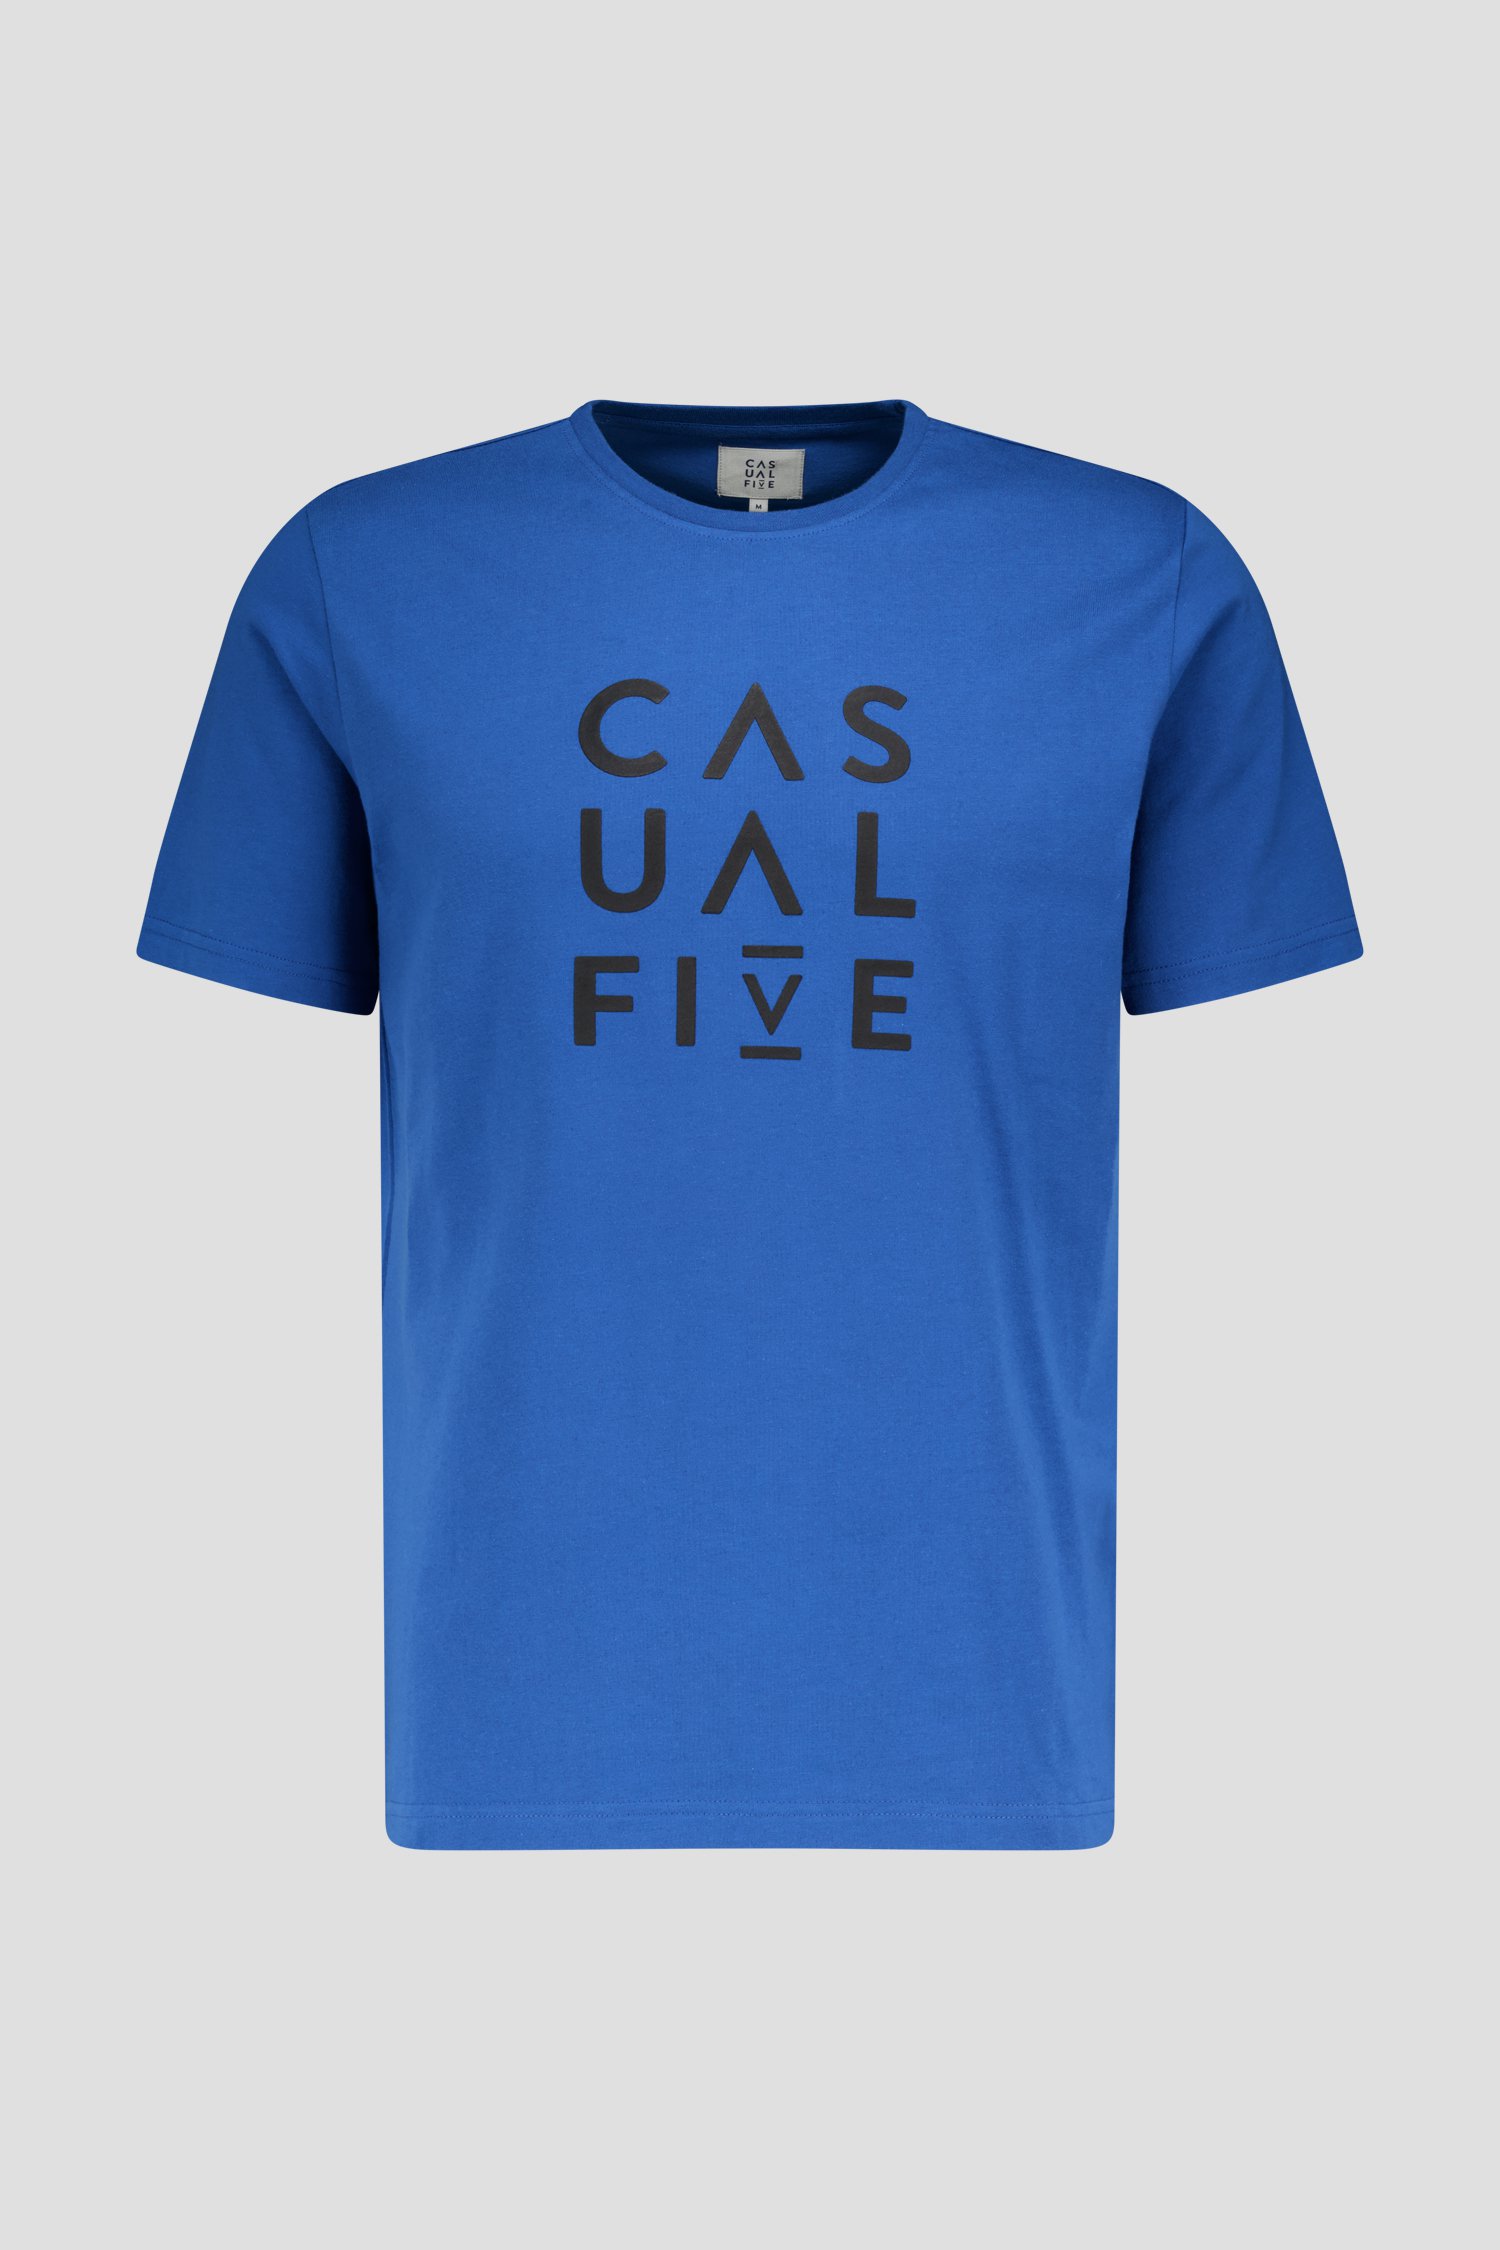 T-shirt bleu foncé à imprimé noir de Casual Five pour Hommes